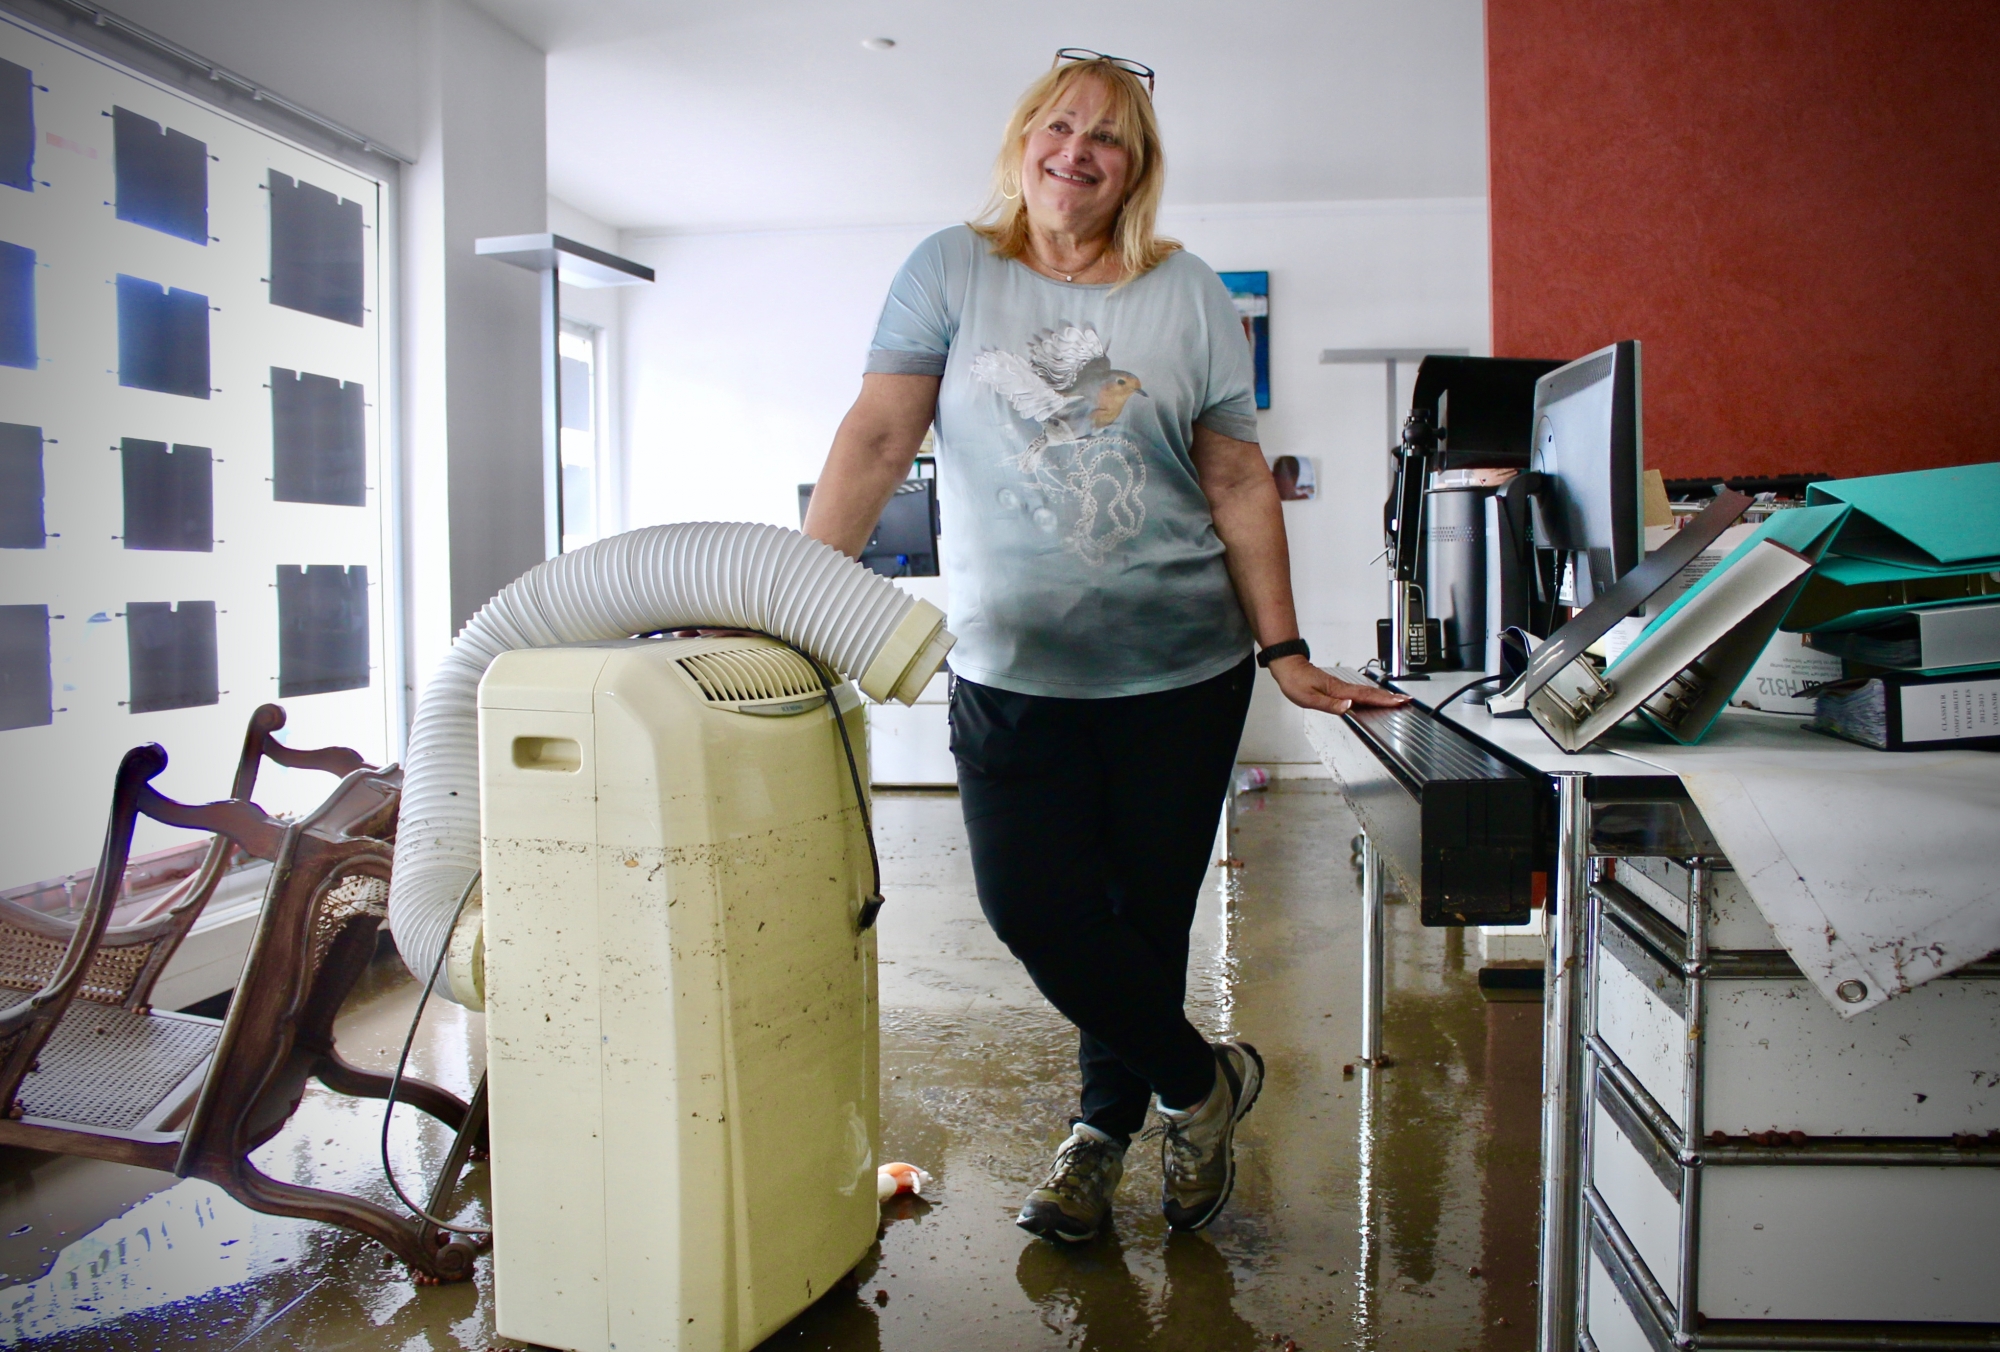 Yolande Claivaz était dans son agence immobilière quand la pluie a tout envahi. Toutefois, la professionnelle tente de garder le sourire.